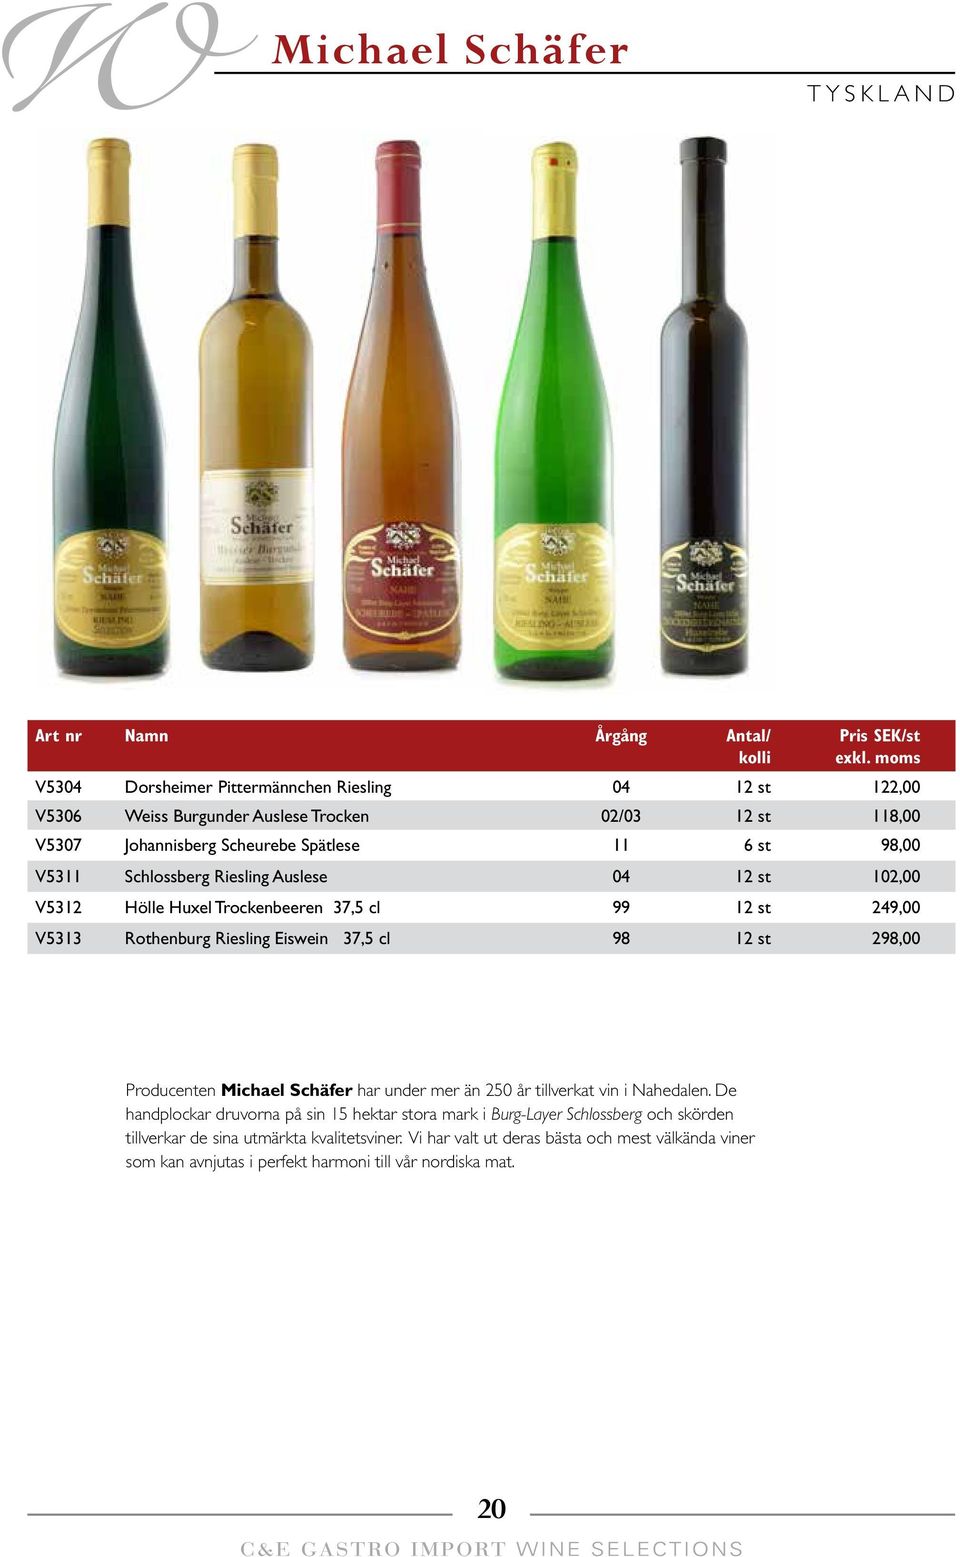 cl 98 12 st 298,00 Producenten Michael Schäfer har under mer än 250 år tillverkat vin i Nahedalen.